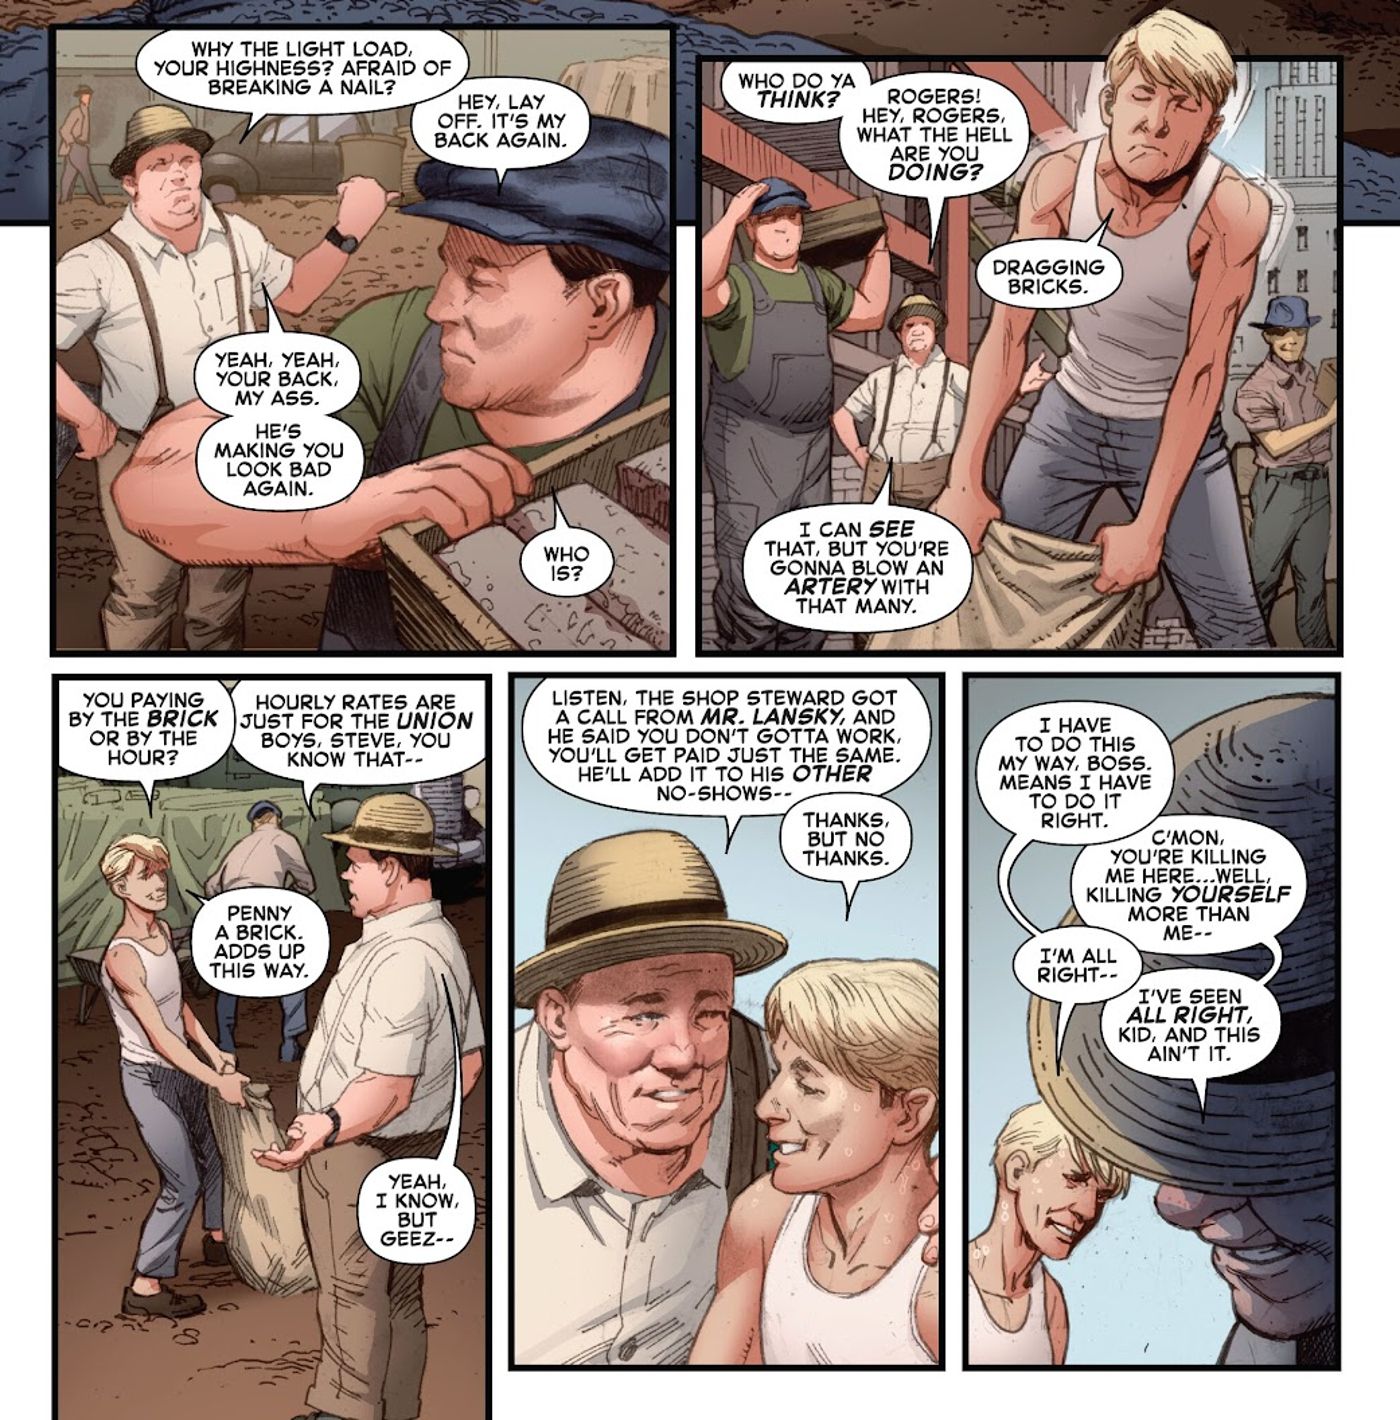 A skinny, pre-serum Steve Rogers works to drag heavy bags of bricks in Captain America #4. 